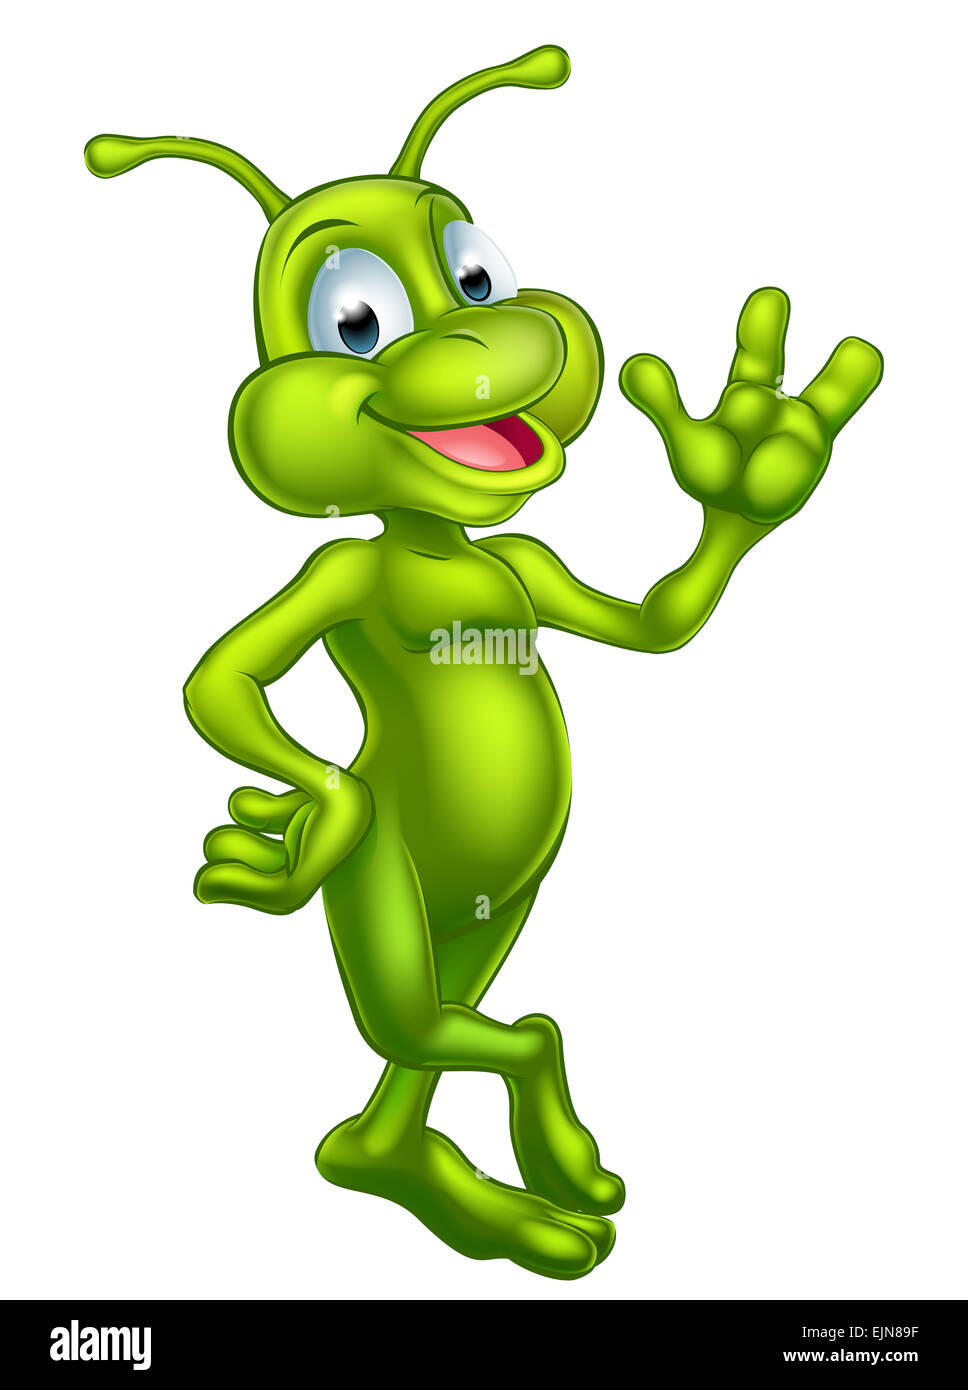 Ein Beispiel für eine niedliche grüne Außerirdische Comicfigur Stockfoto